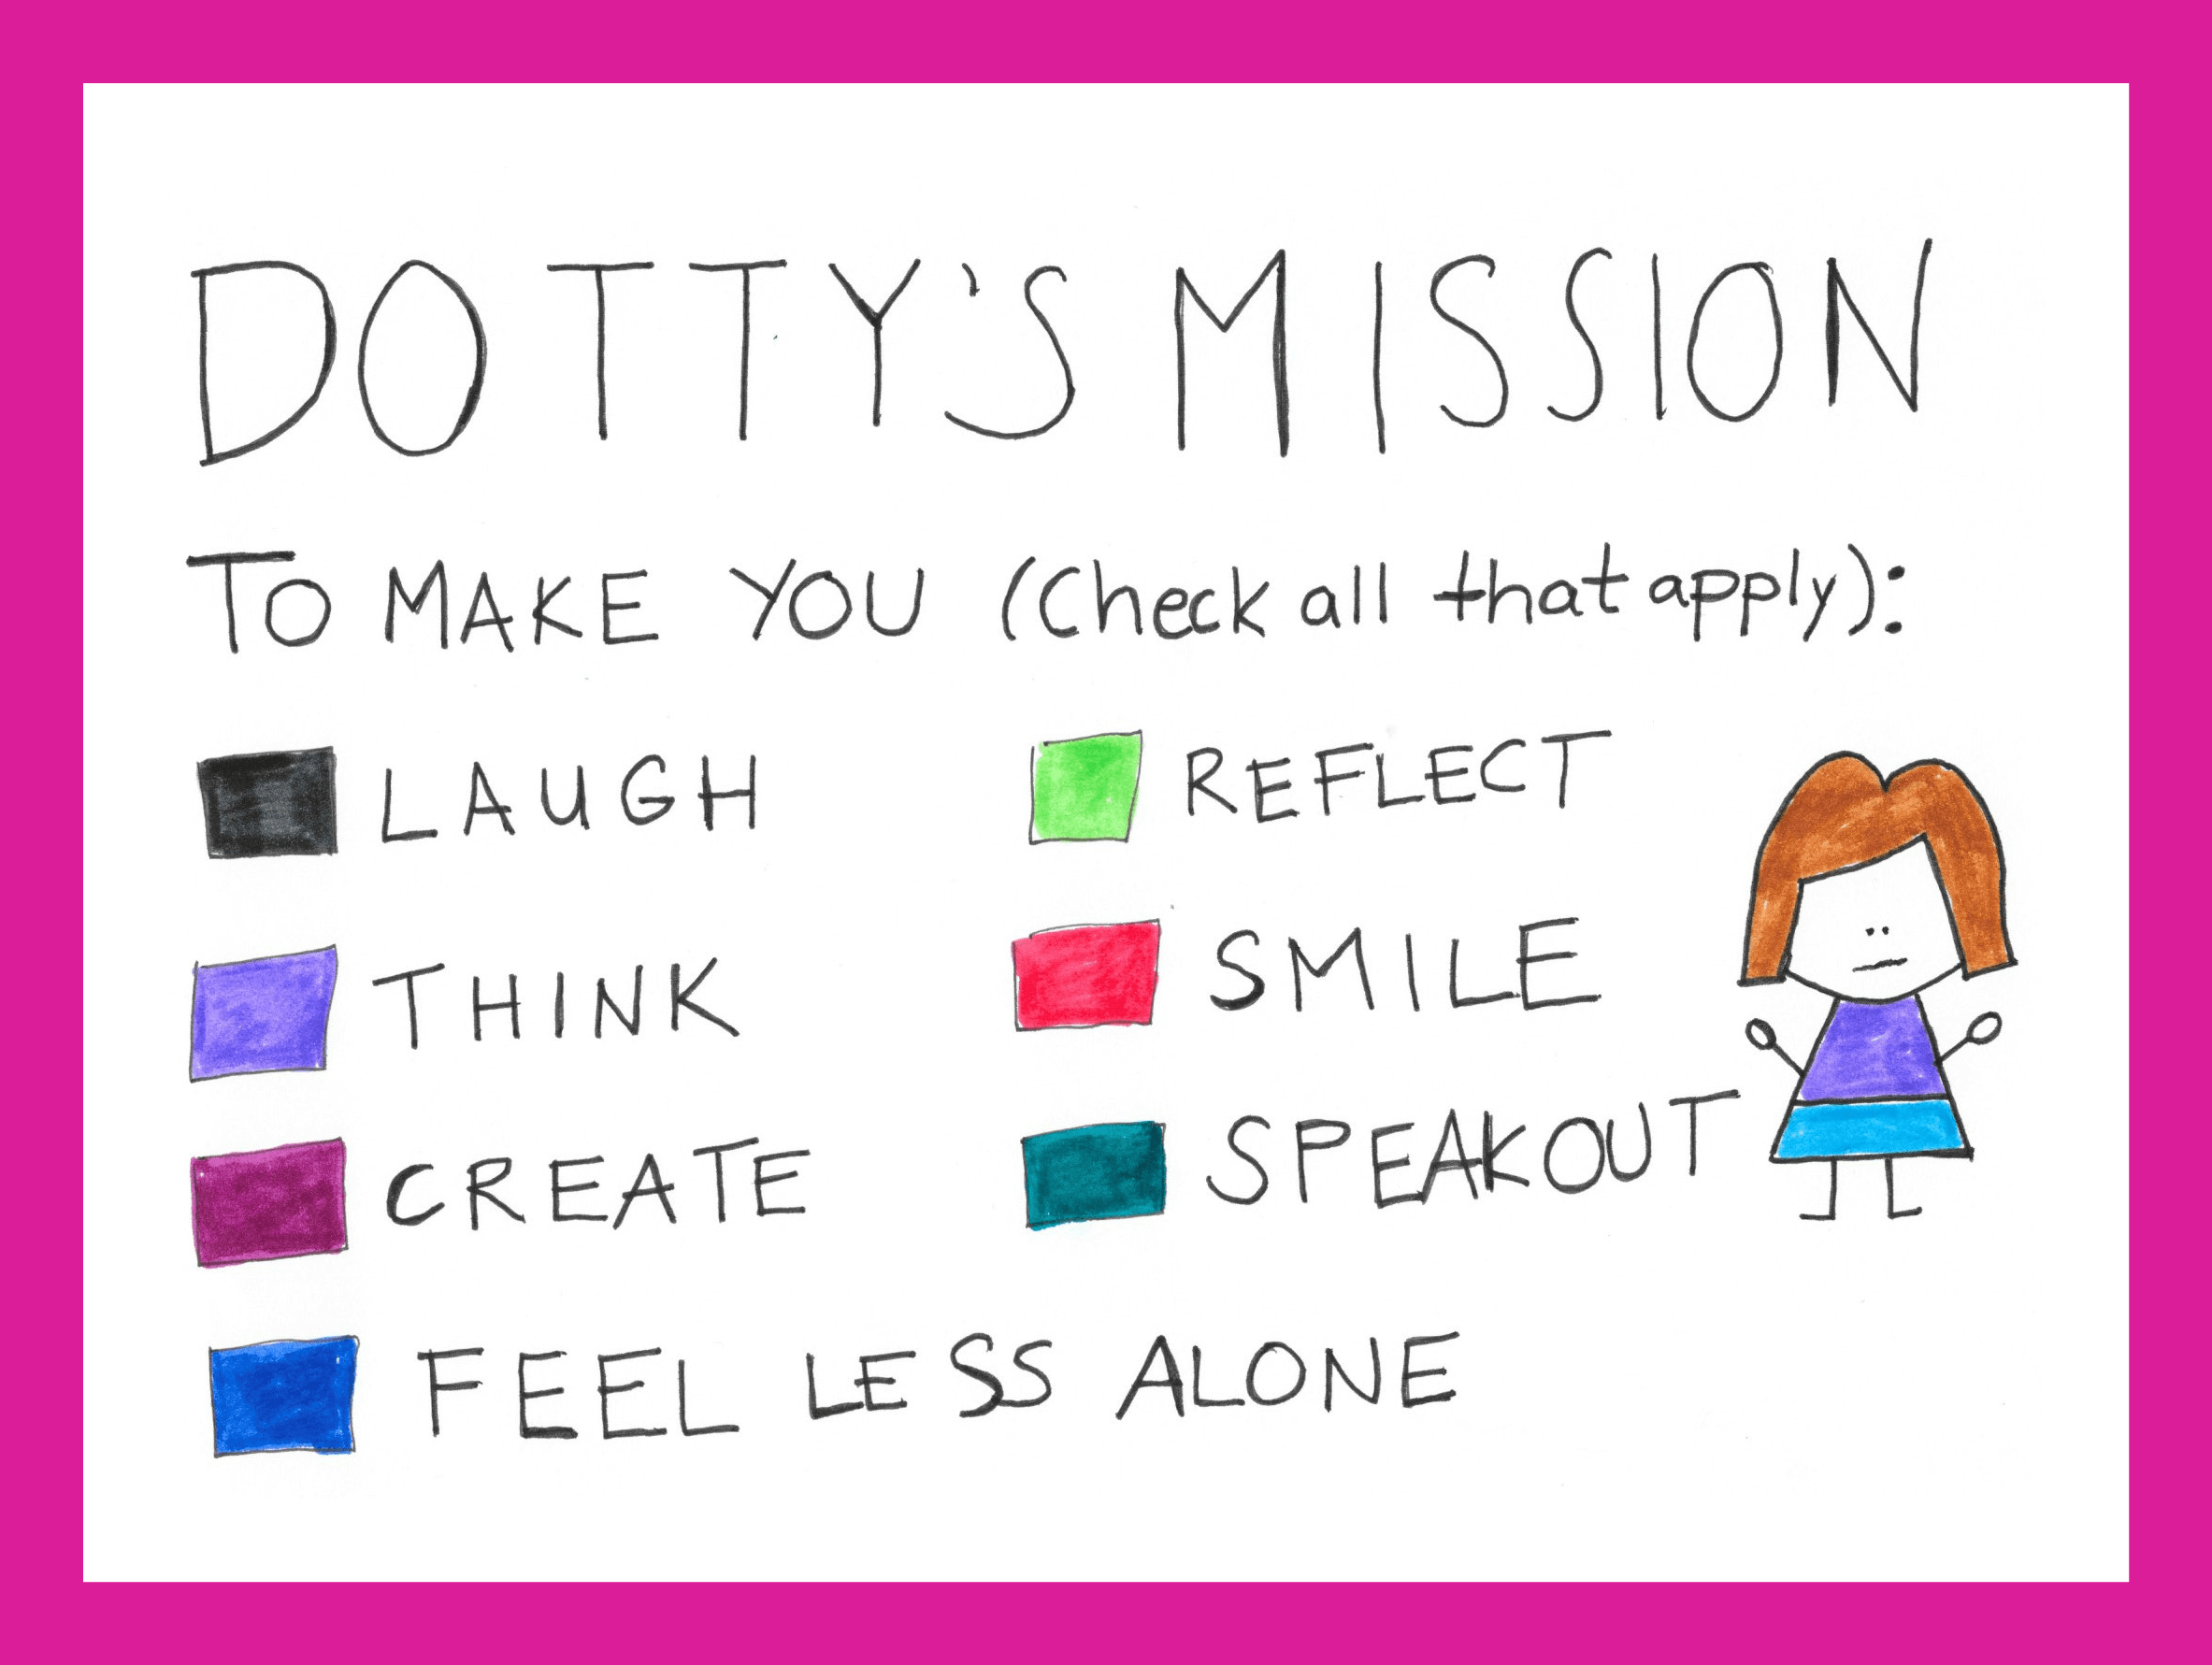 Dotty's Mission